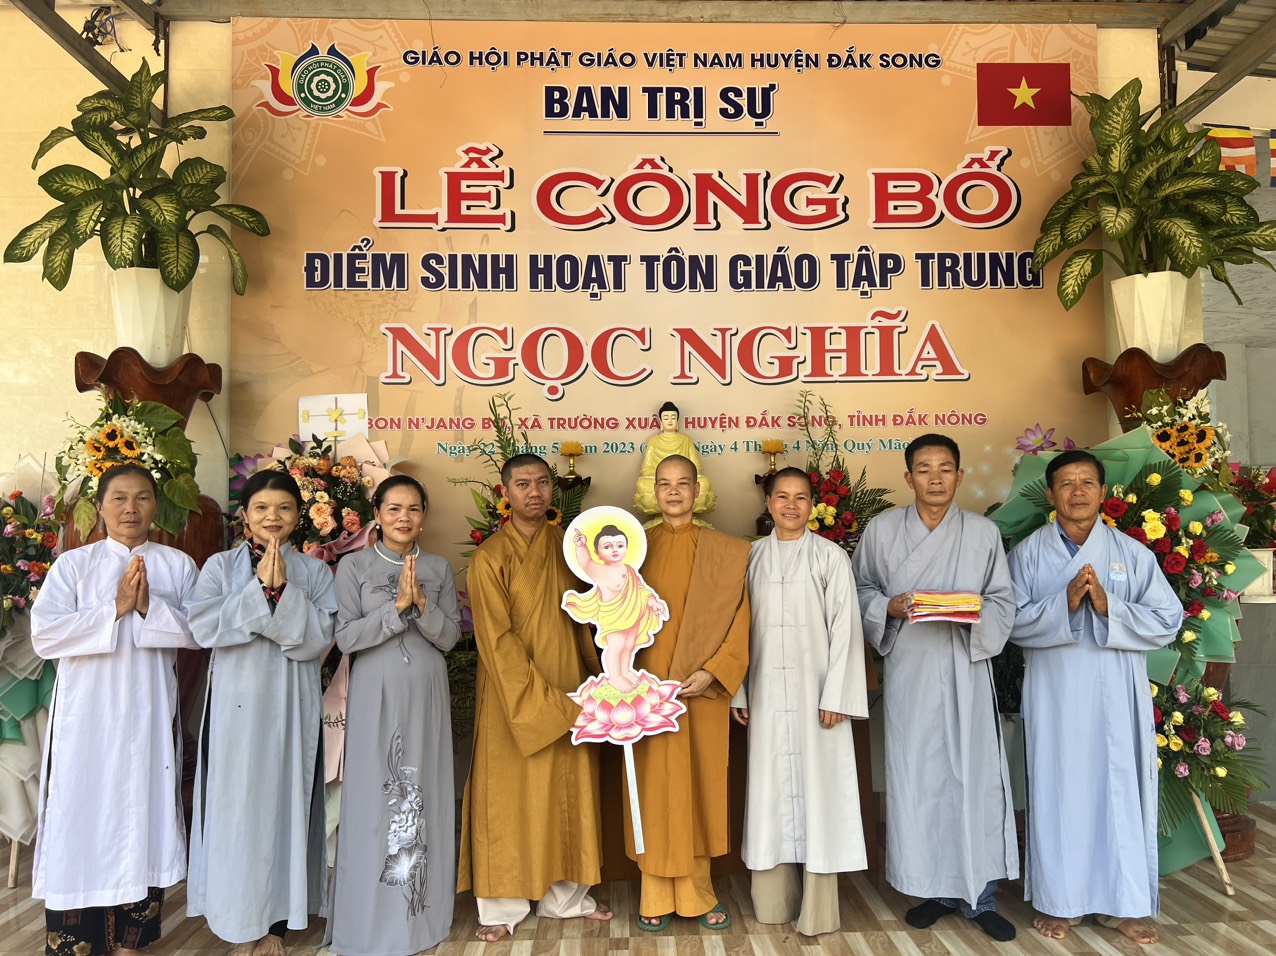 Ban Trị sự Phật giáo huyện Đắk Song thăm các điểm sinh hoạt Tôn giáo tập trung trên địa bàn huyện